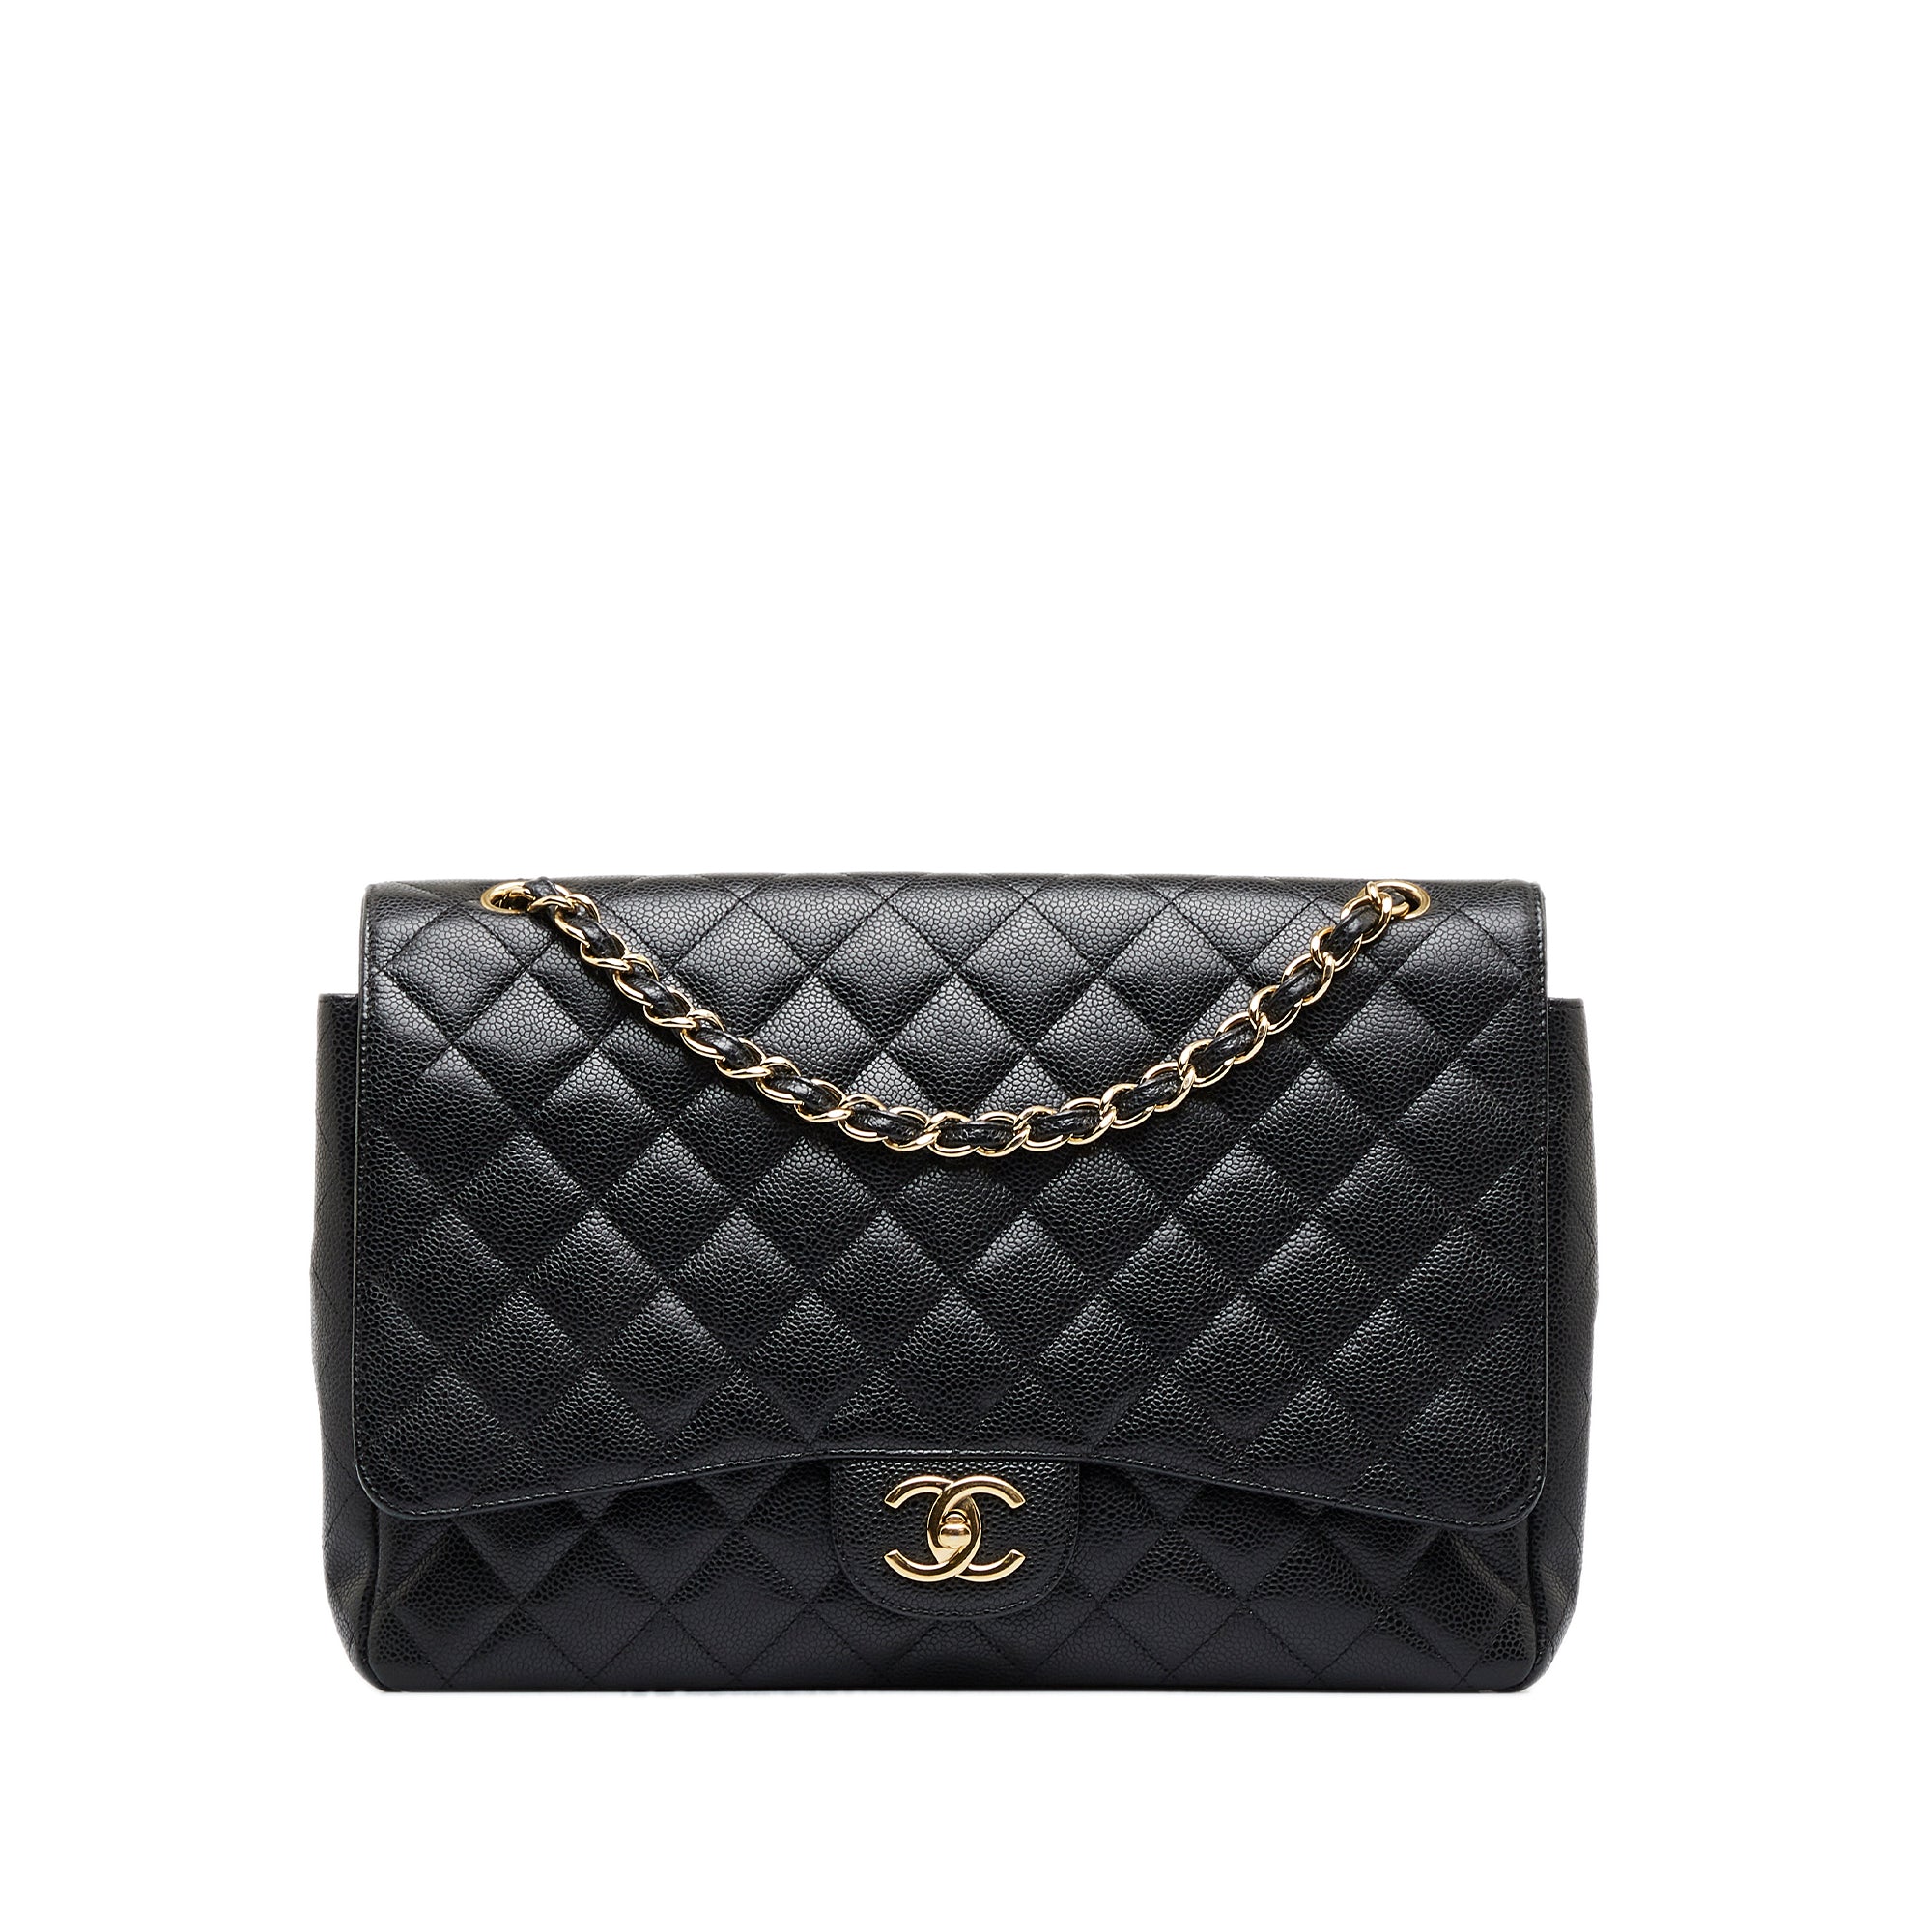 Chanel Maxi Classic Caviar Double Flap Shoulder Bag